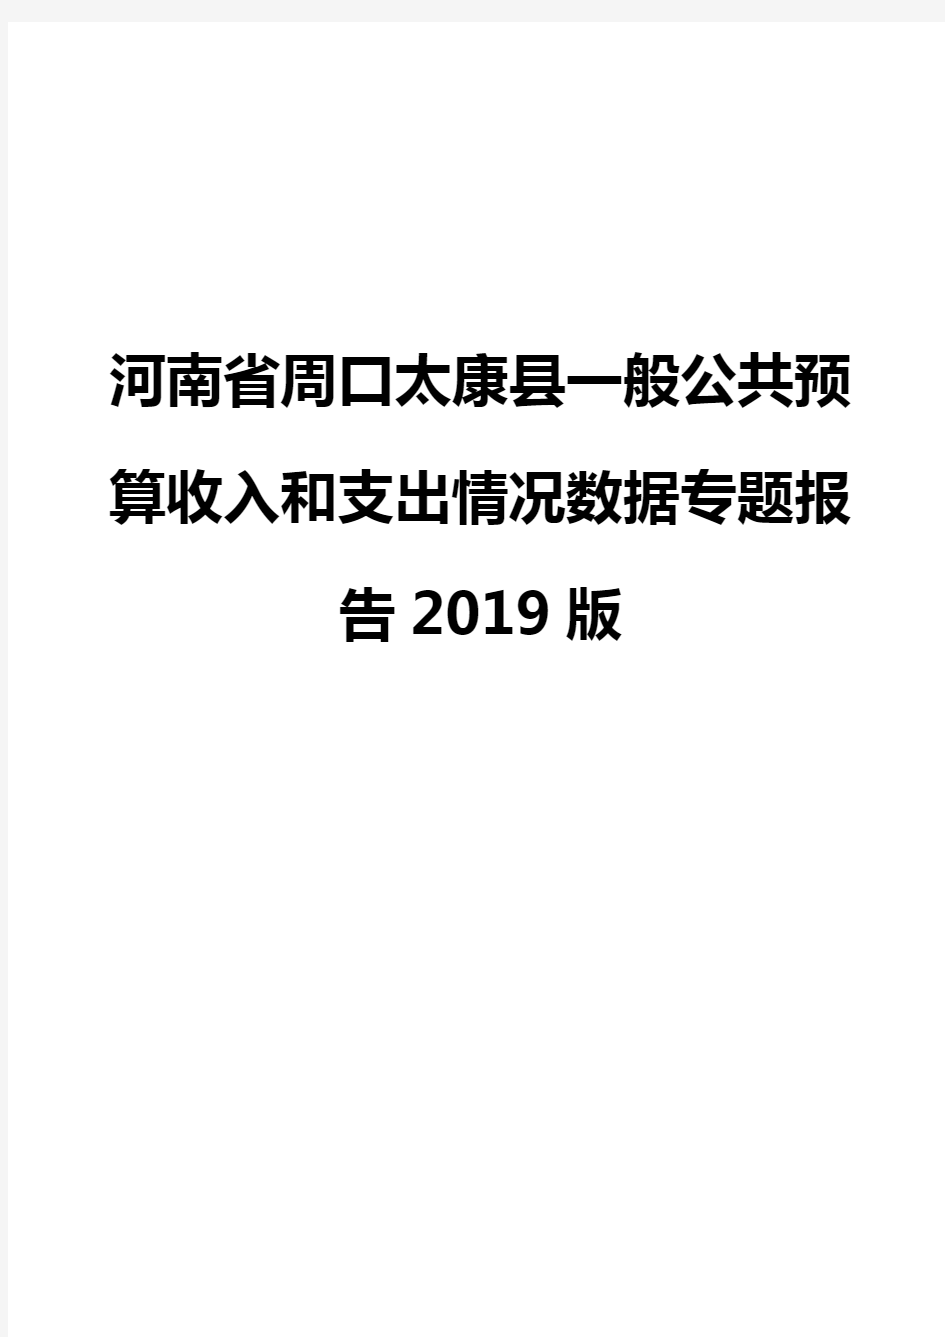 河南省周口太康县一般公共预算收入和支出情况数据专题报告2019版